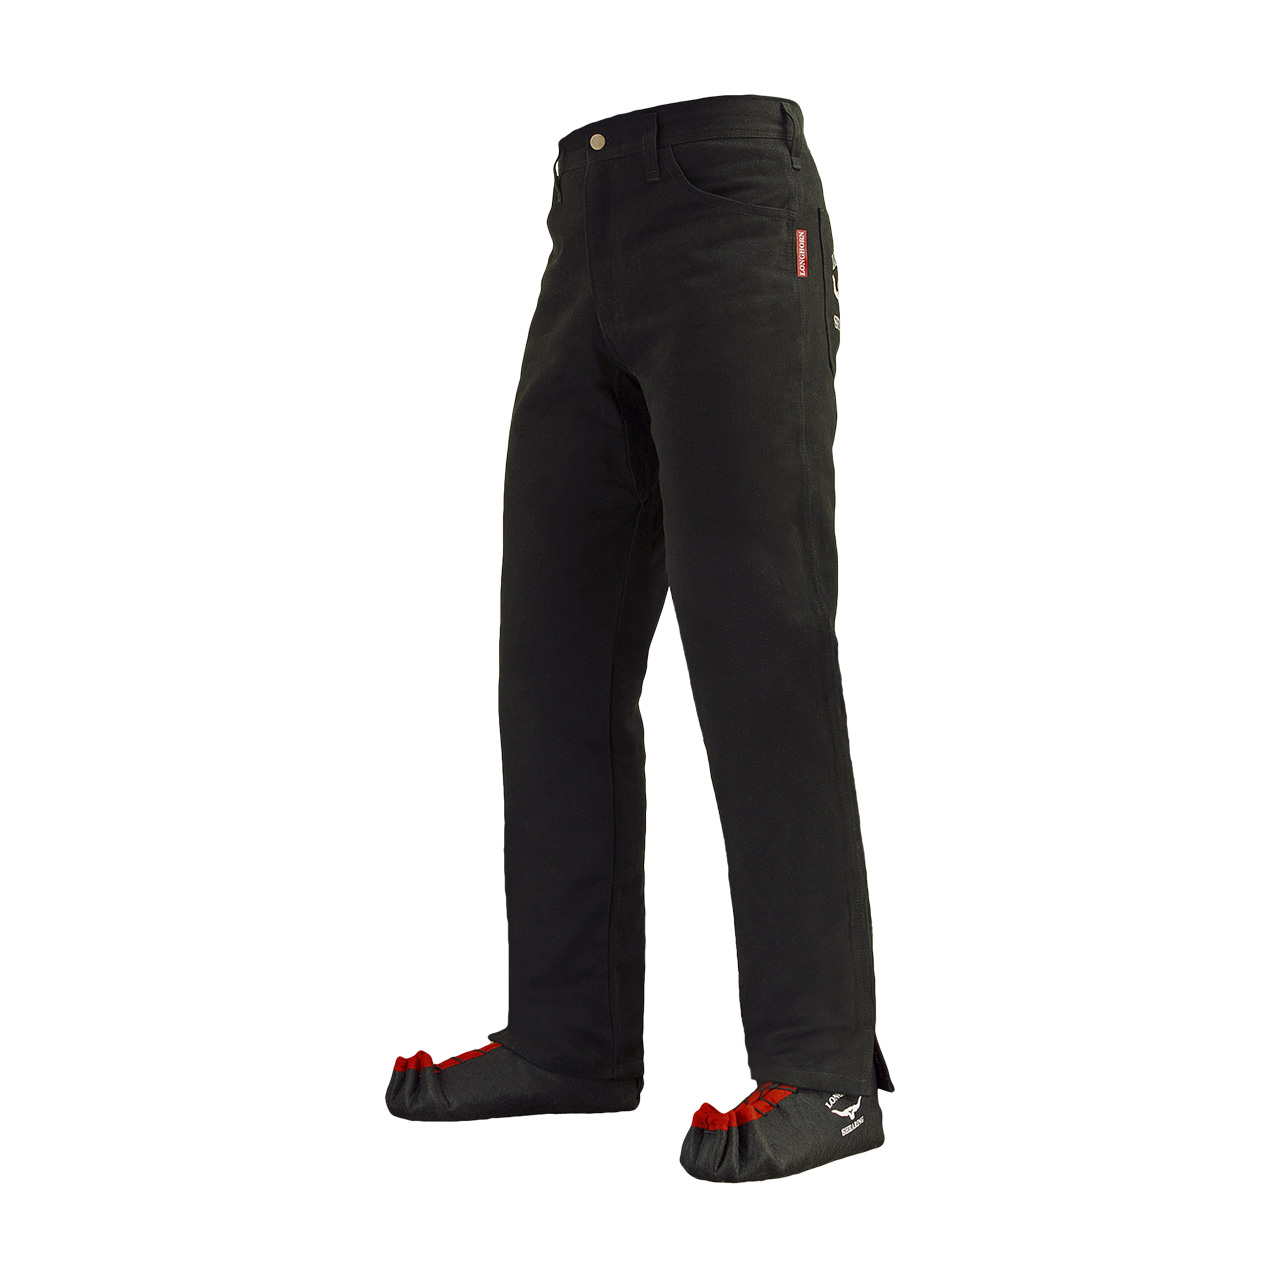 Longhorn™ kalhoty pro střihače ovcí s 2 předními kapsami velikost Slim 33/33 (5 1/2)